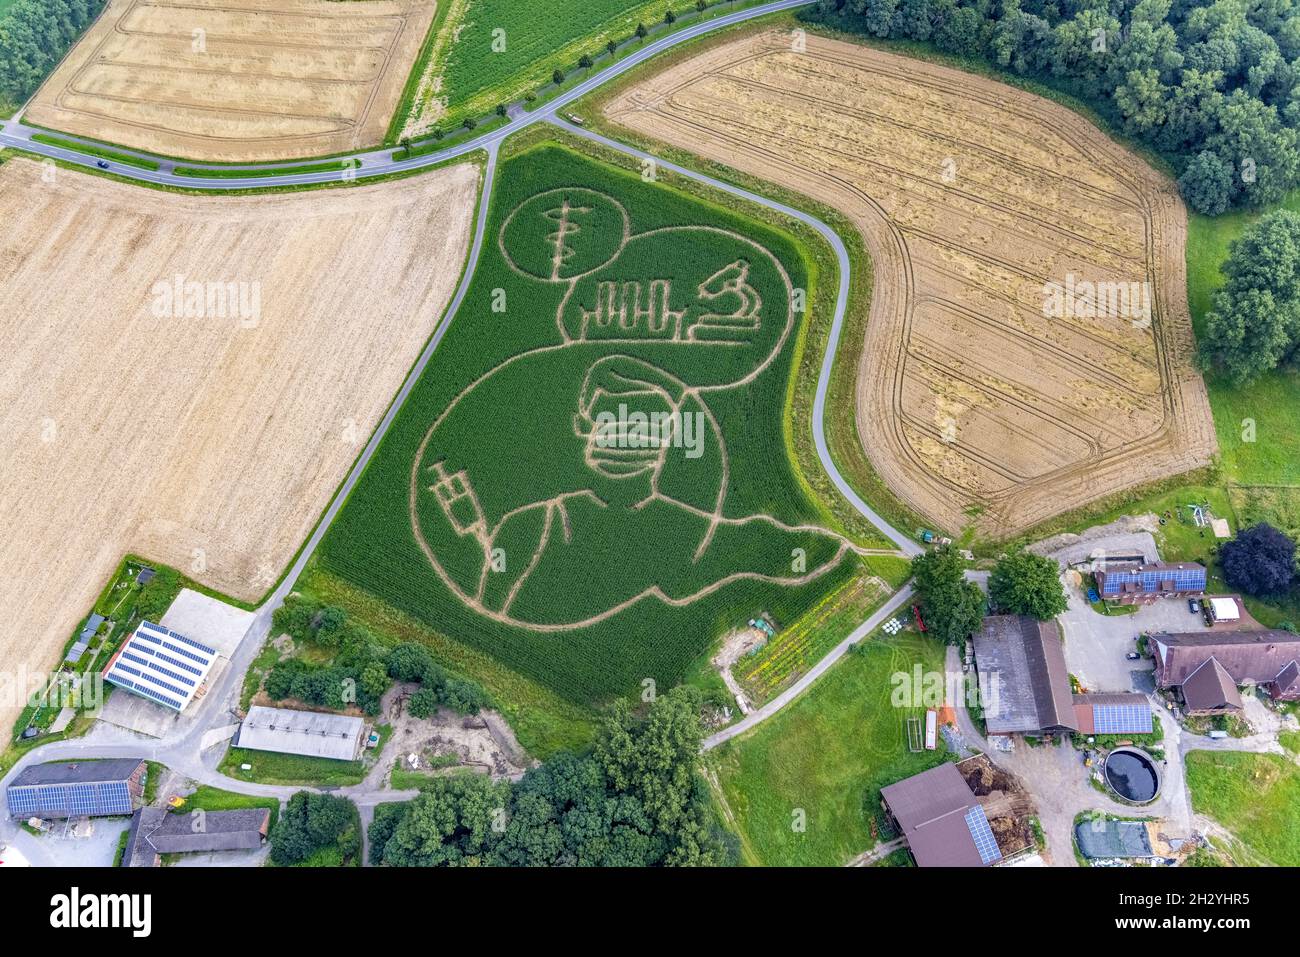 Benedikt Lünemann zaubert jedes Jahr ein Maislabyrinth auf seinem Feld. Meist sind die Motive gesellschaftskritisch oder politisch. Dieses Jahr ist es eine Person wi Stockfoto